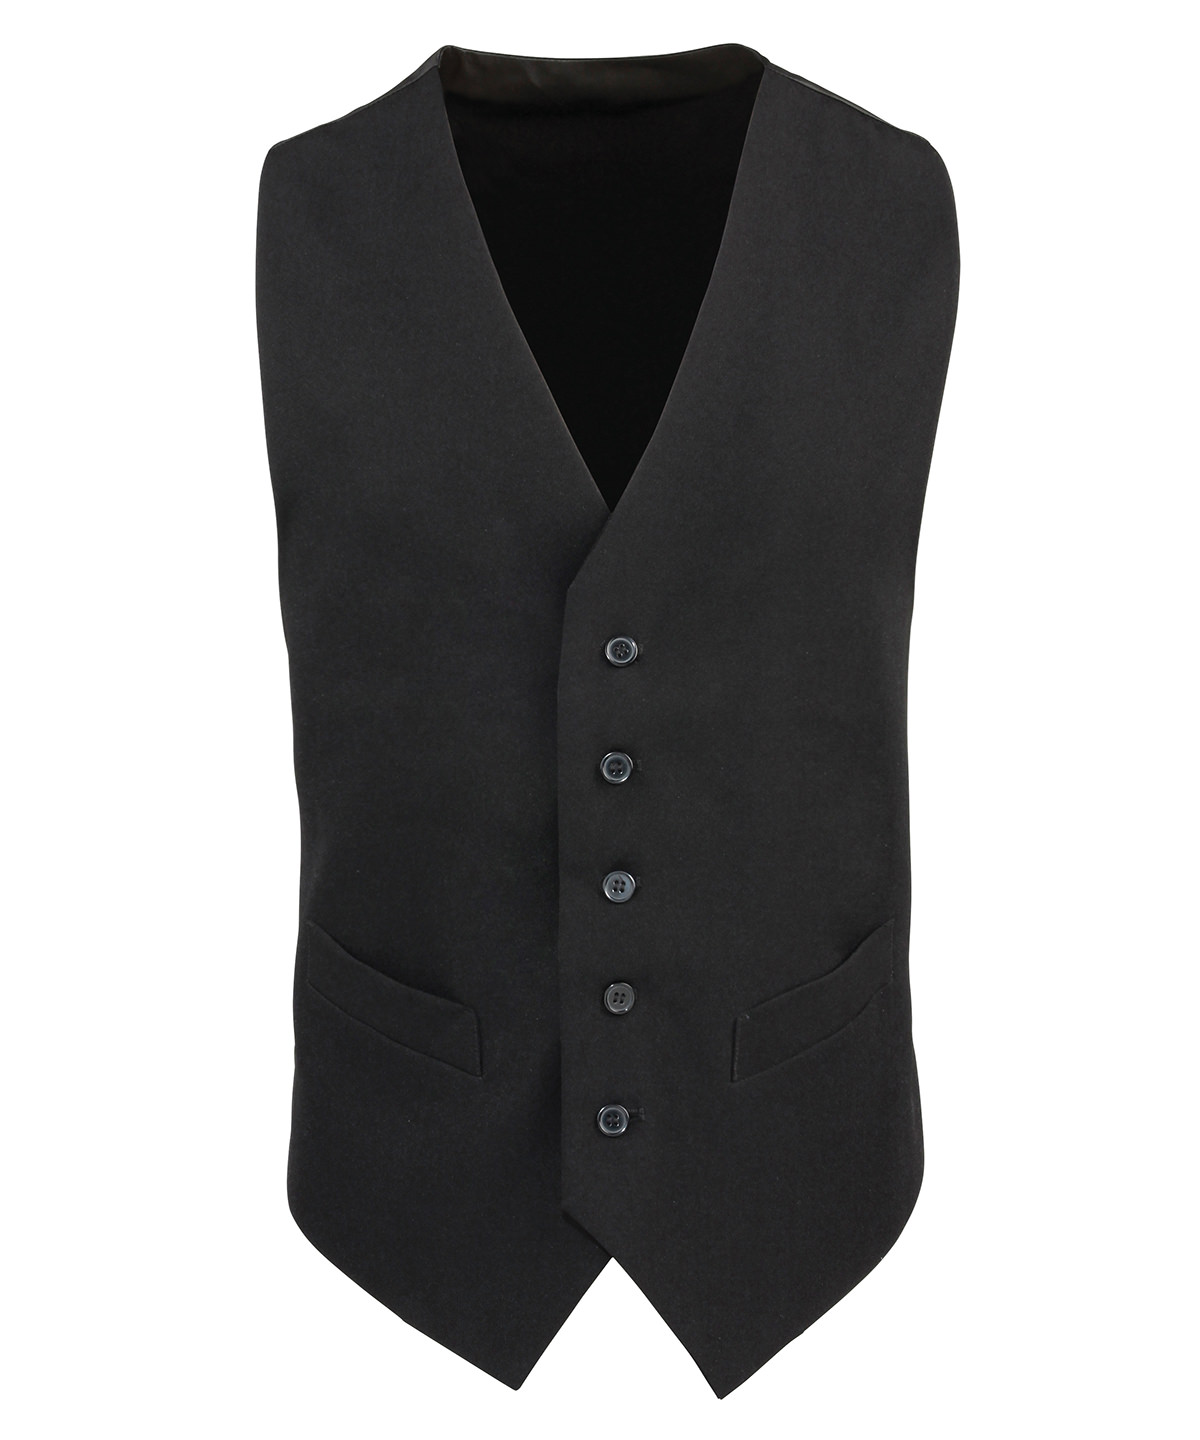 Lined Polyester Waistcoat Black Size 2XLarge